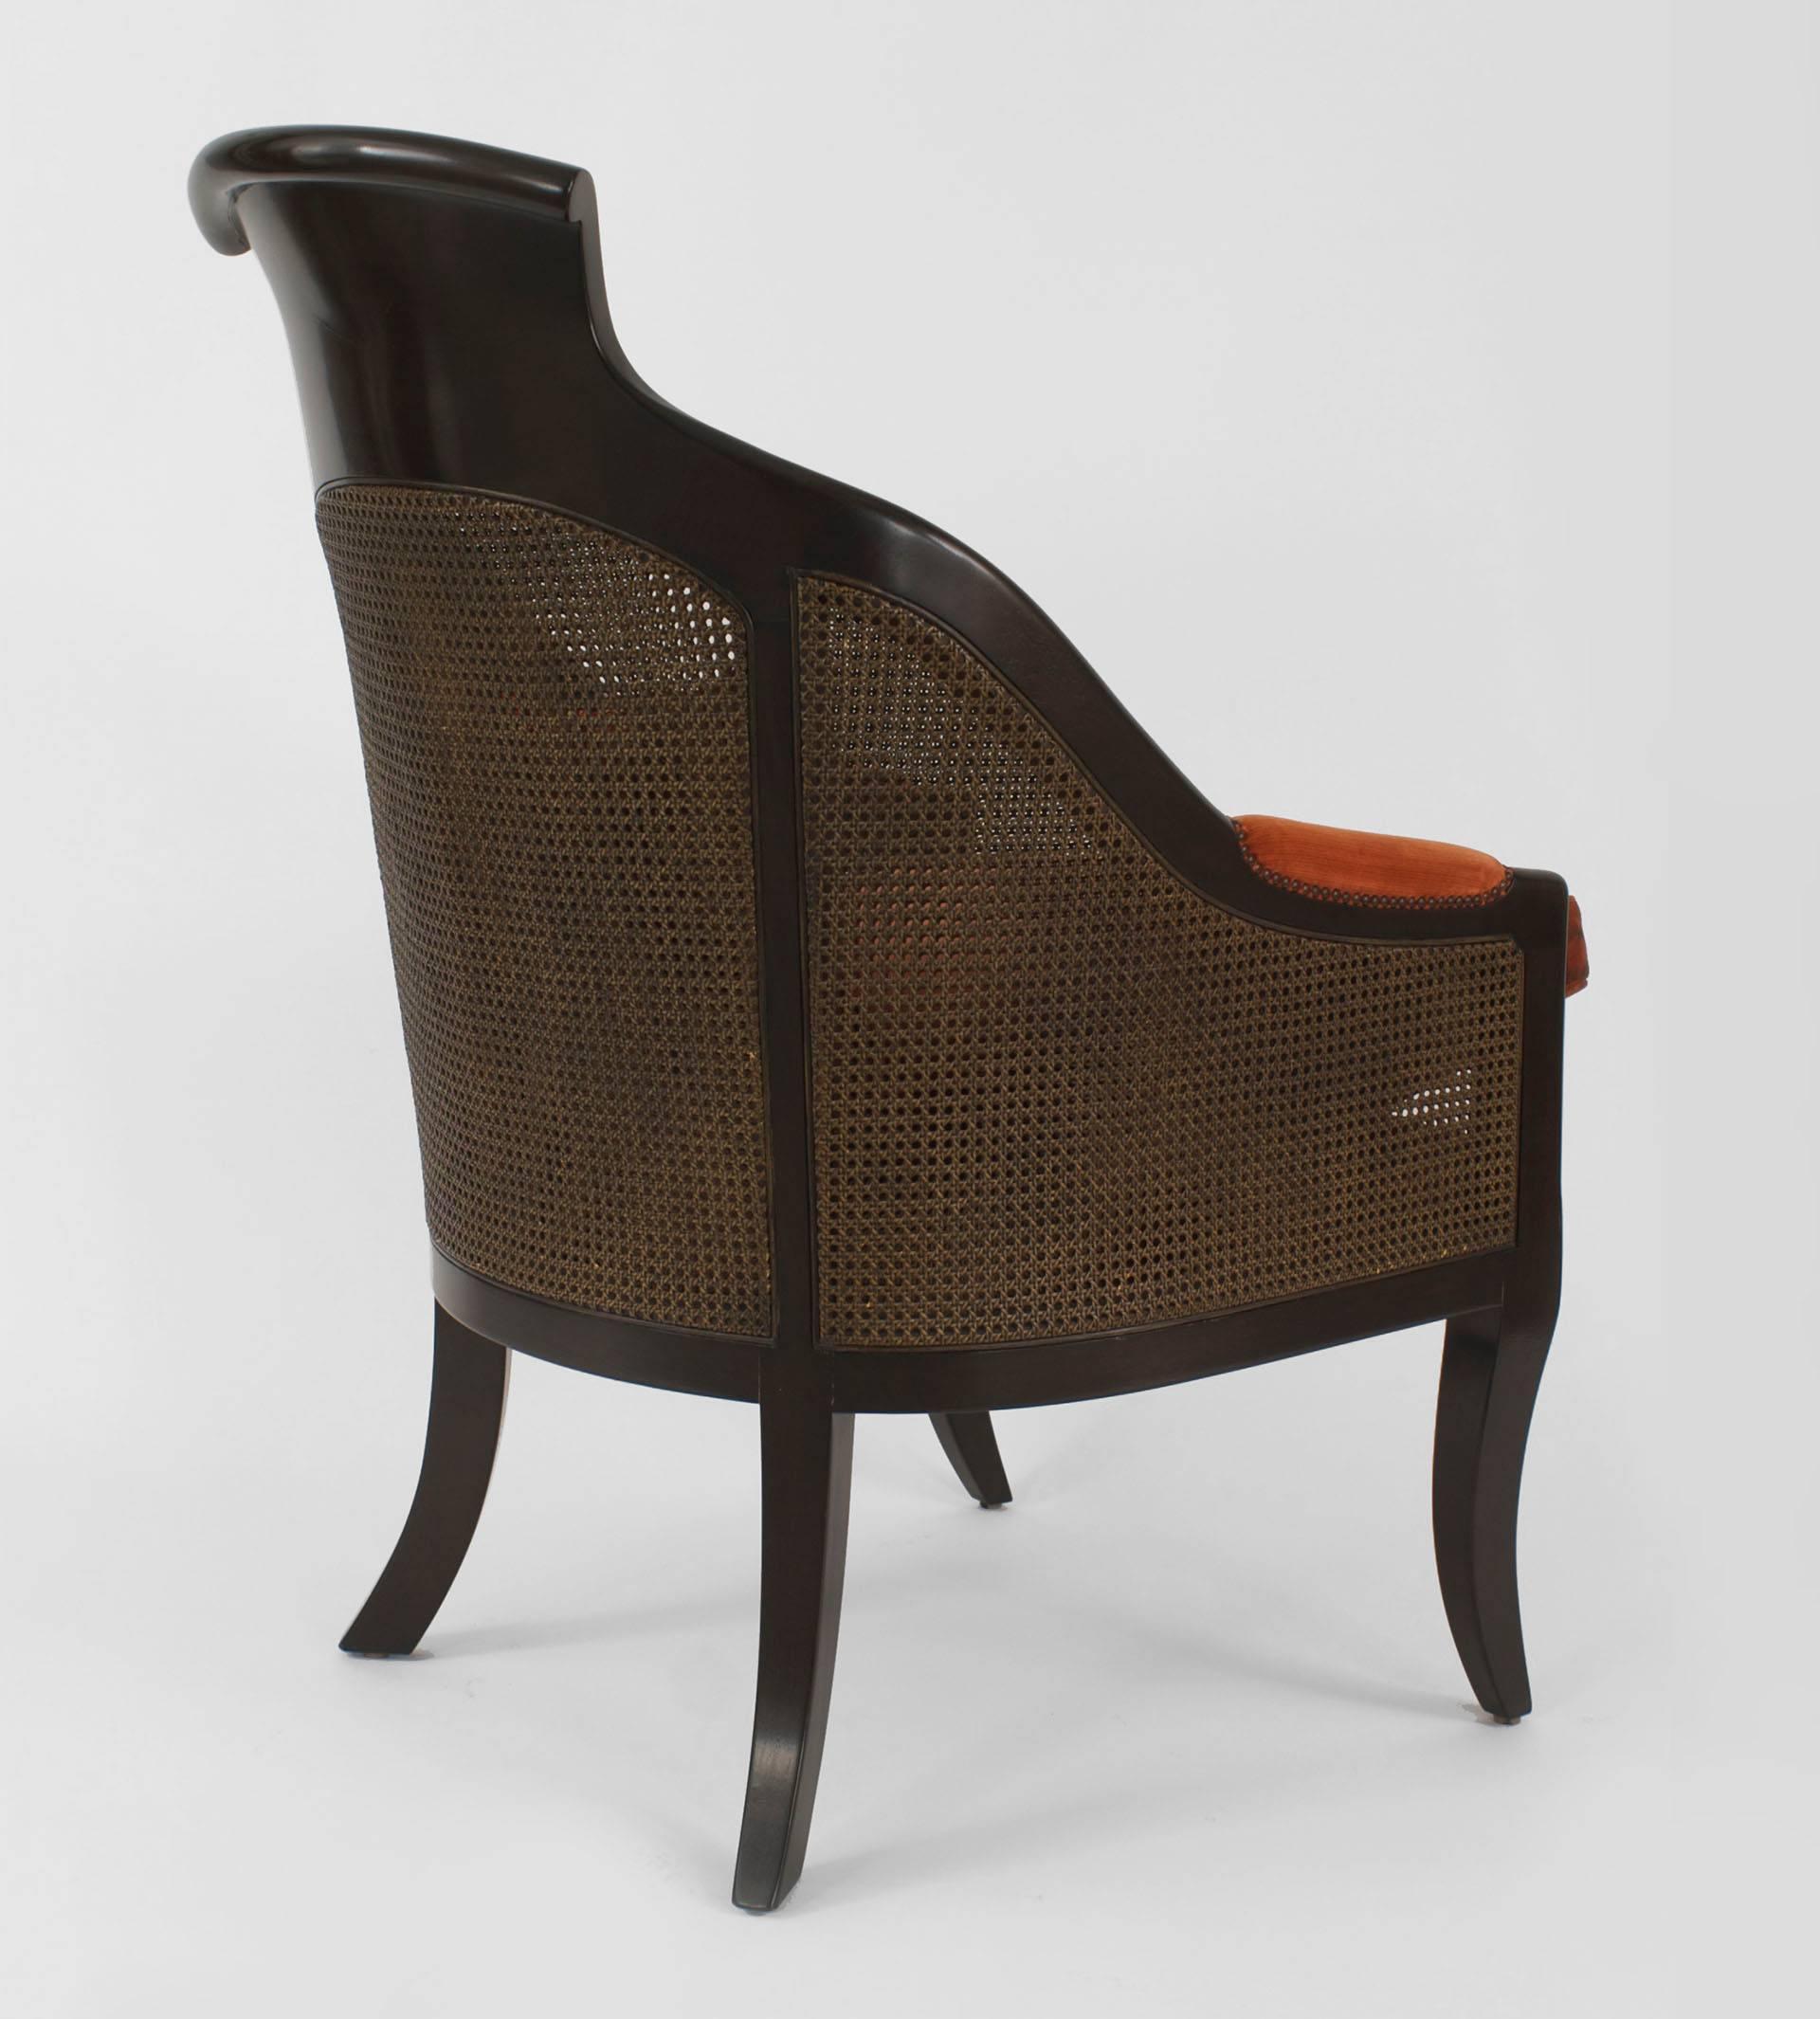 Paire de fauteuils de style Régence anglaise (moderne) en acajou avec dossier et côtés en rotin, coussins de siège et accoudoirs tapissés de velours couleur rouille (PRIX PAR PAIRE)
